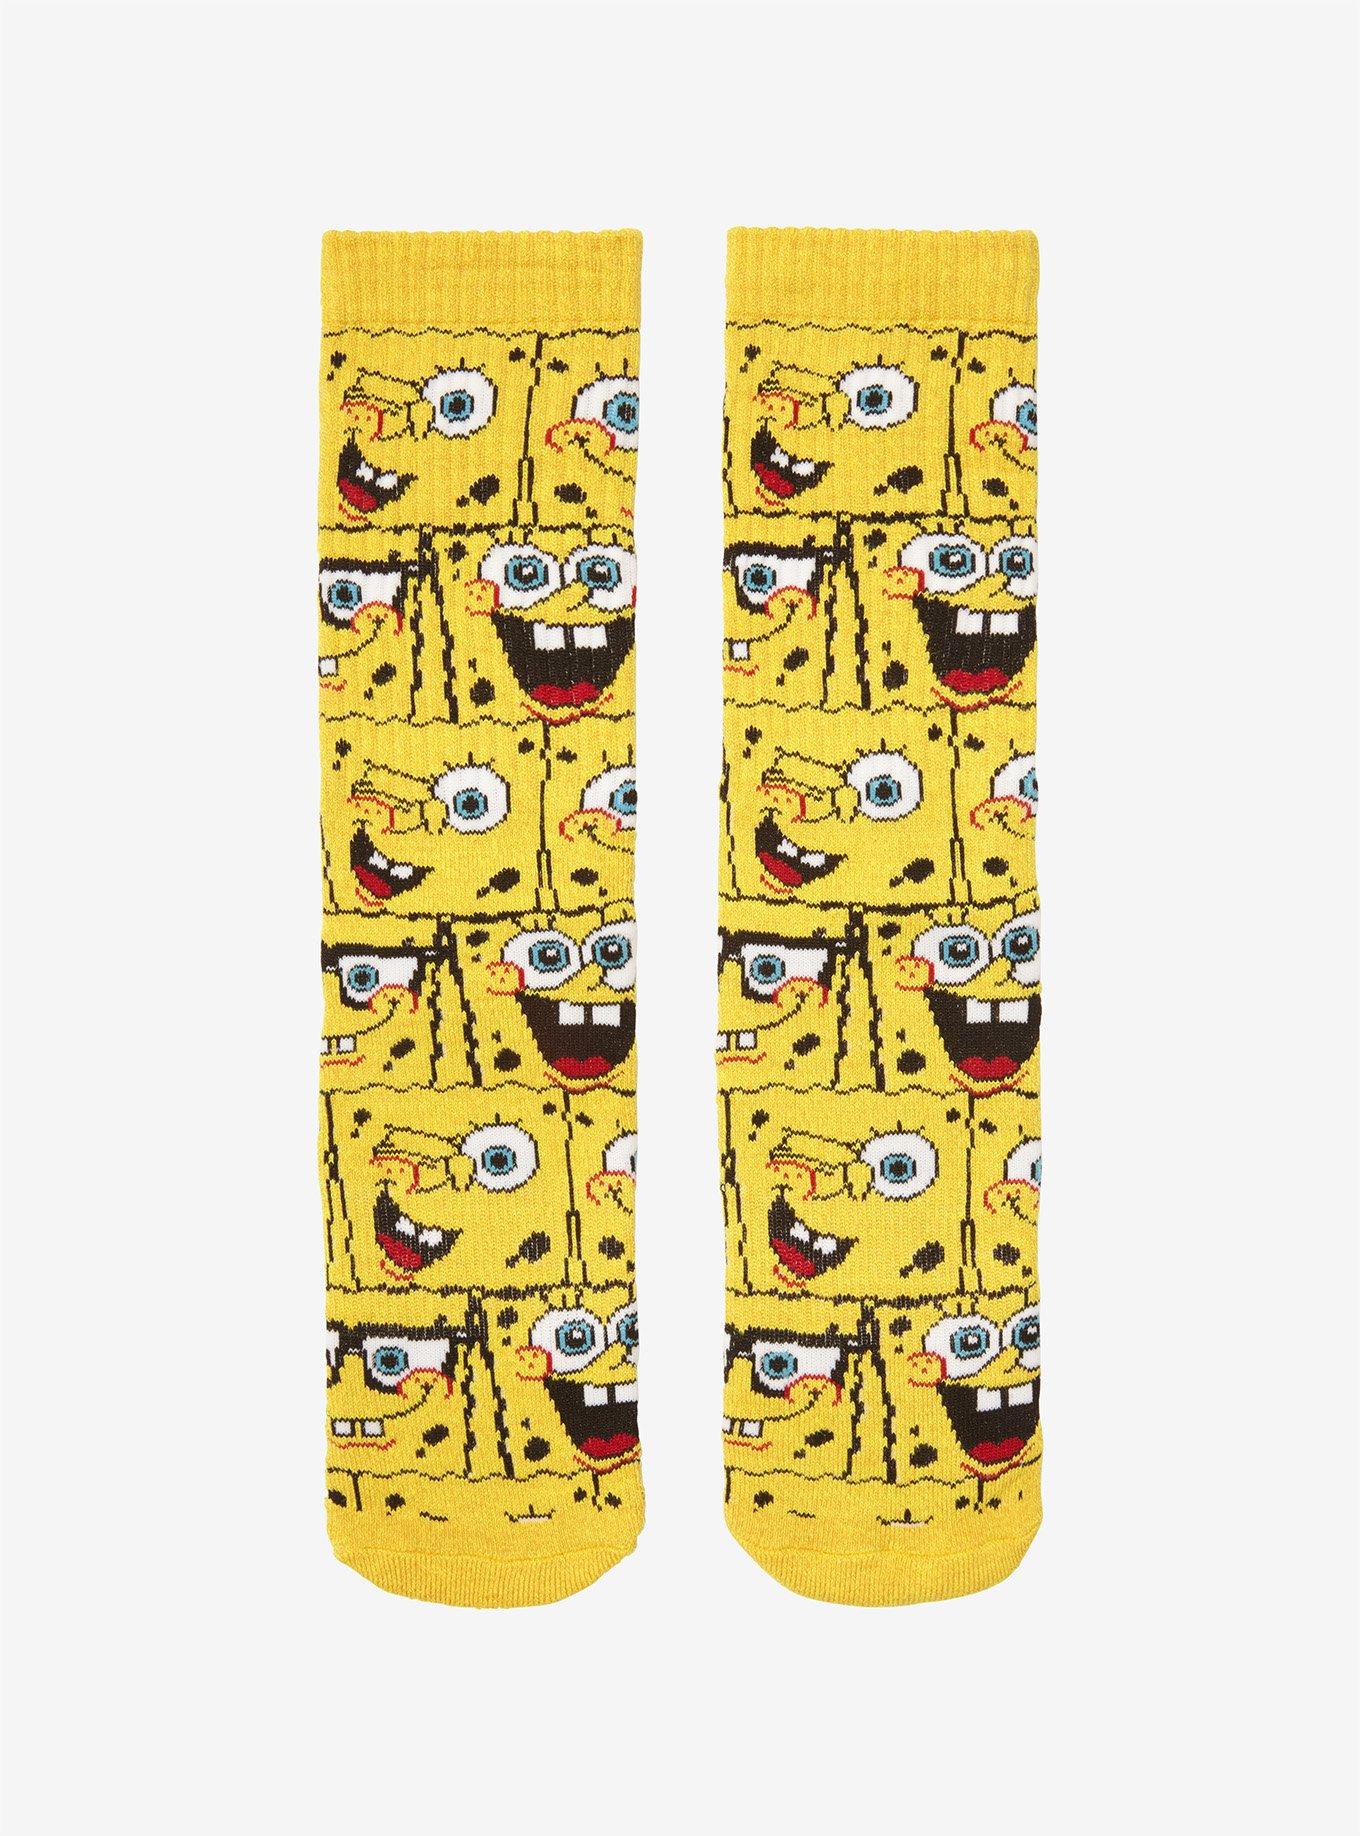 SpongeBob SquarePants Expressions Crew Socks, , hi-res